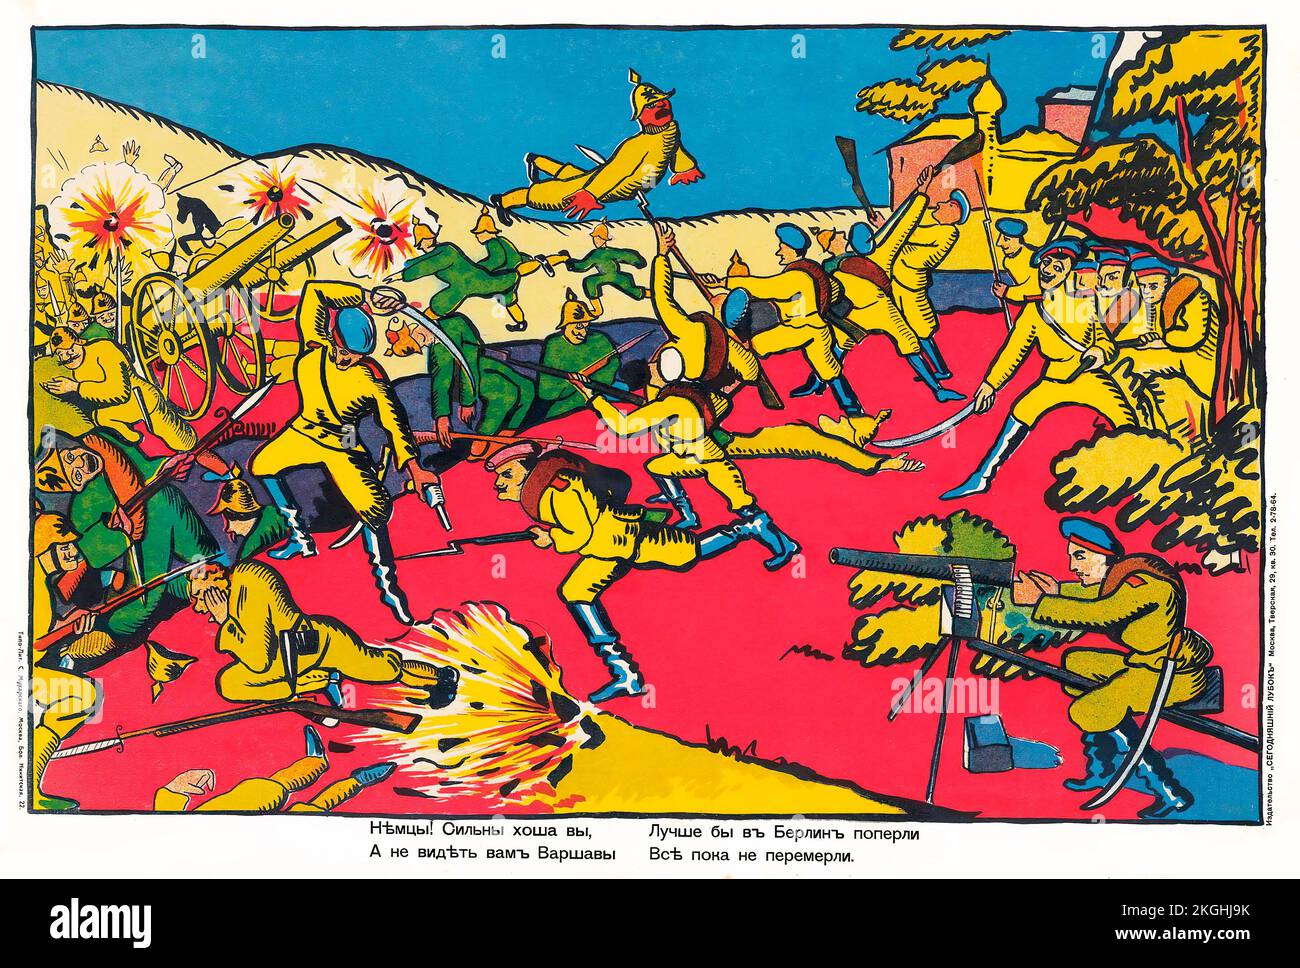 Affiche de guerre russe - artiste inconnu, texte de Vladimir Mayakovsky (1893-1930) Allemands! Bien que vous soyez fort, vous ne verrez pas Varsovie. 1914 la première Guerre mondiale Banque D'Images